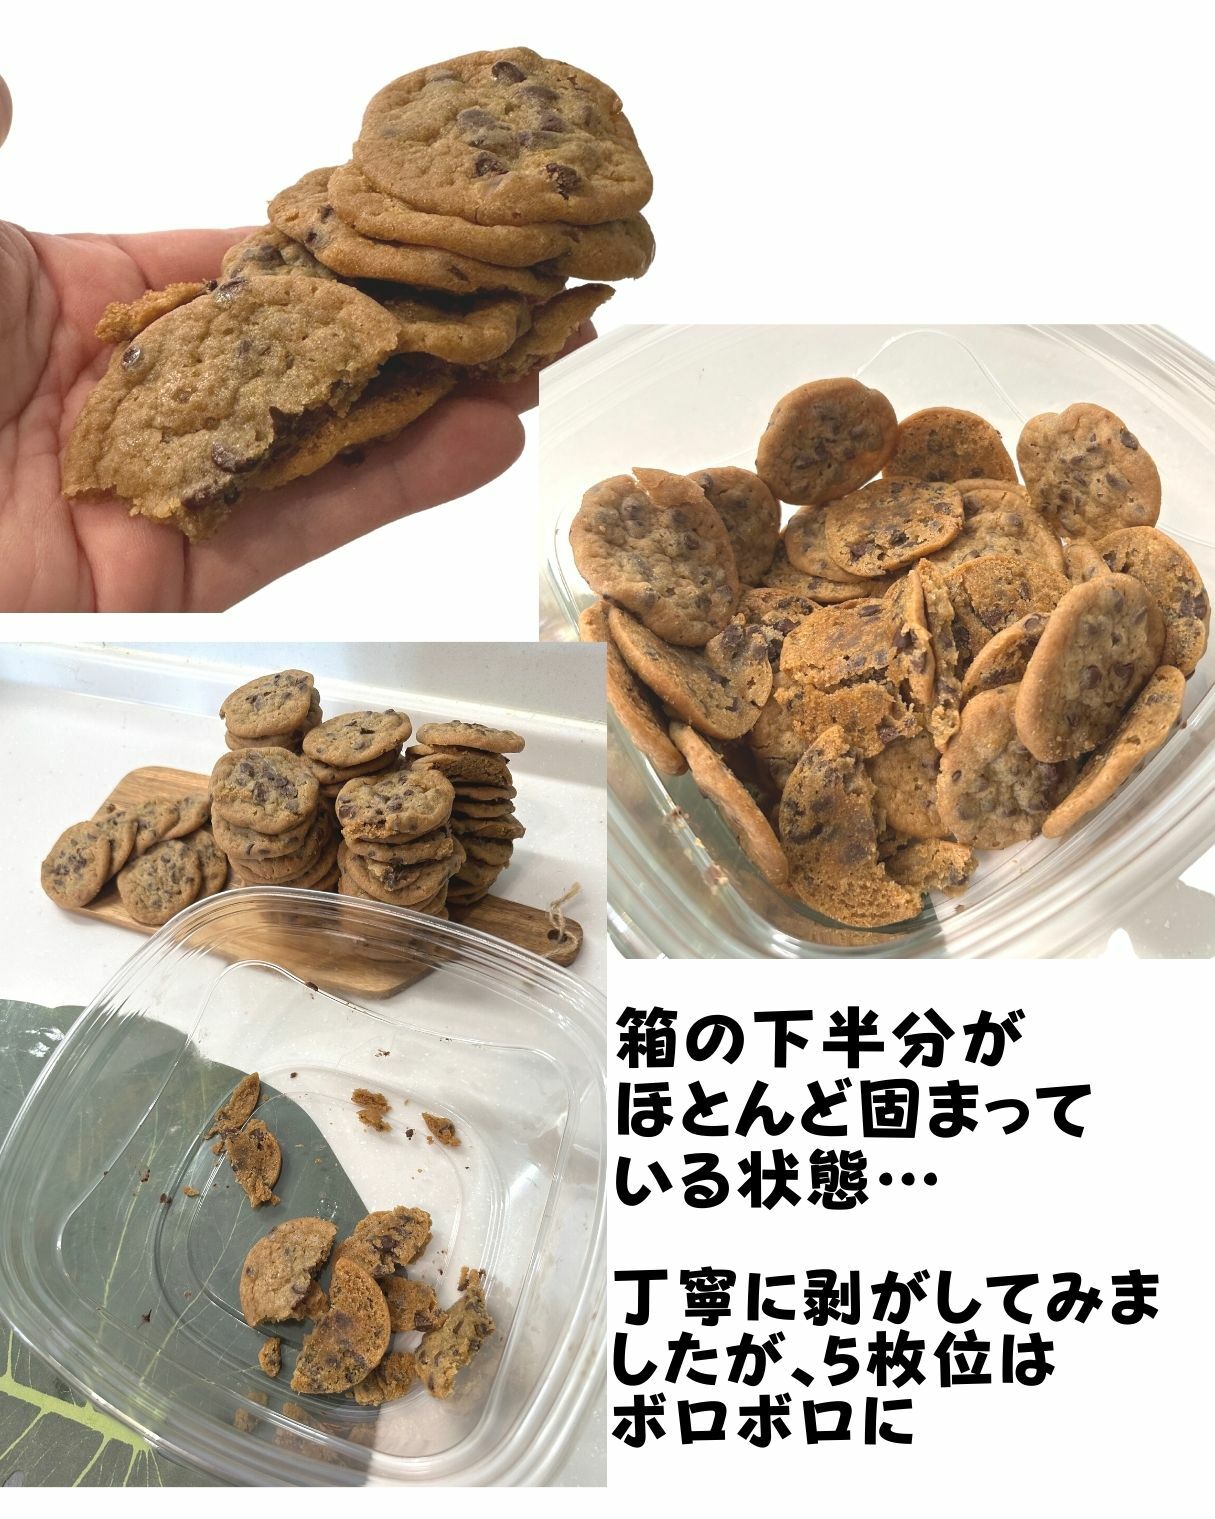 【コストコ】ミニチョコチップクッキーは崩れやすい